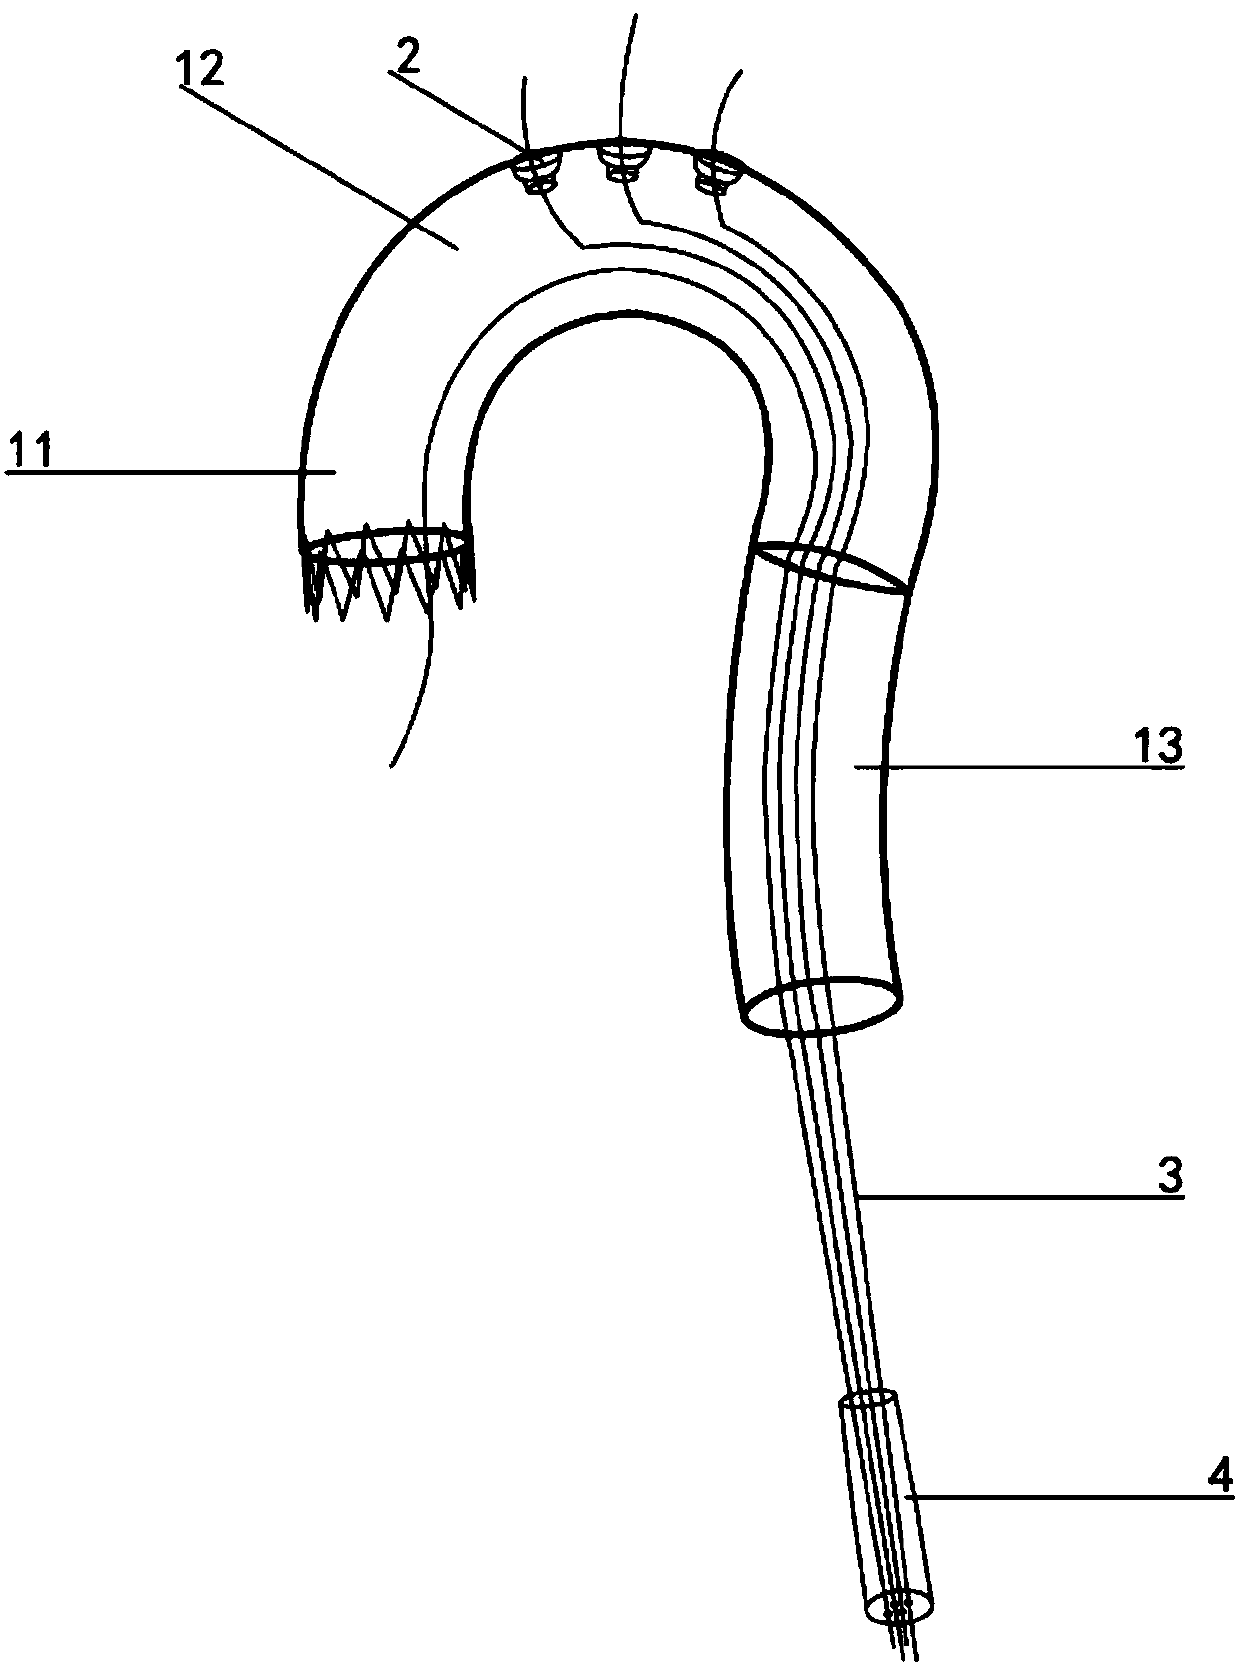 Novel aorta inner branch type covered stent